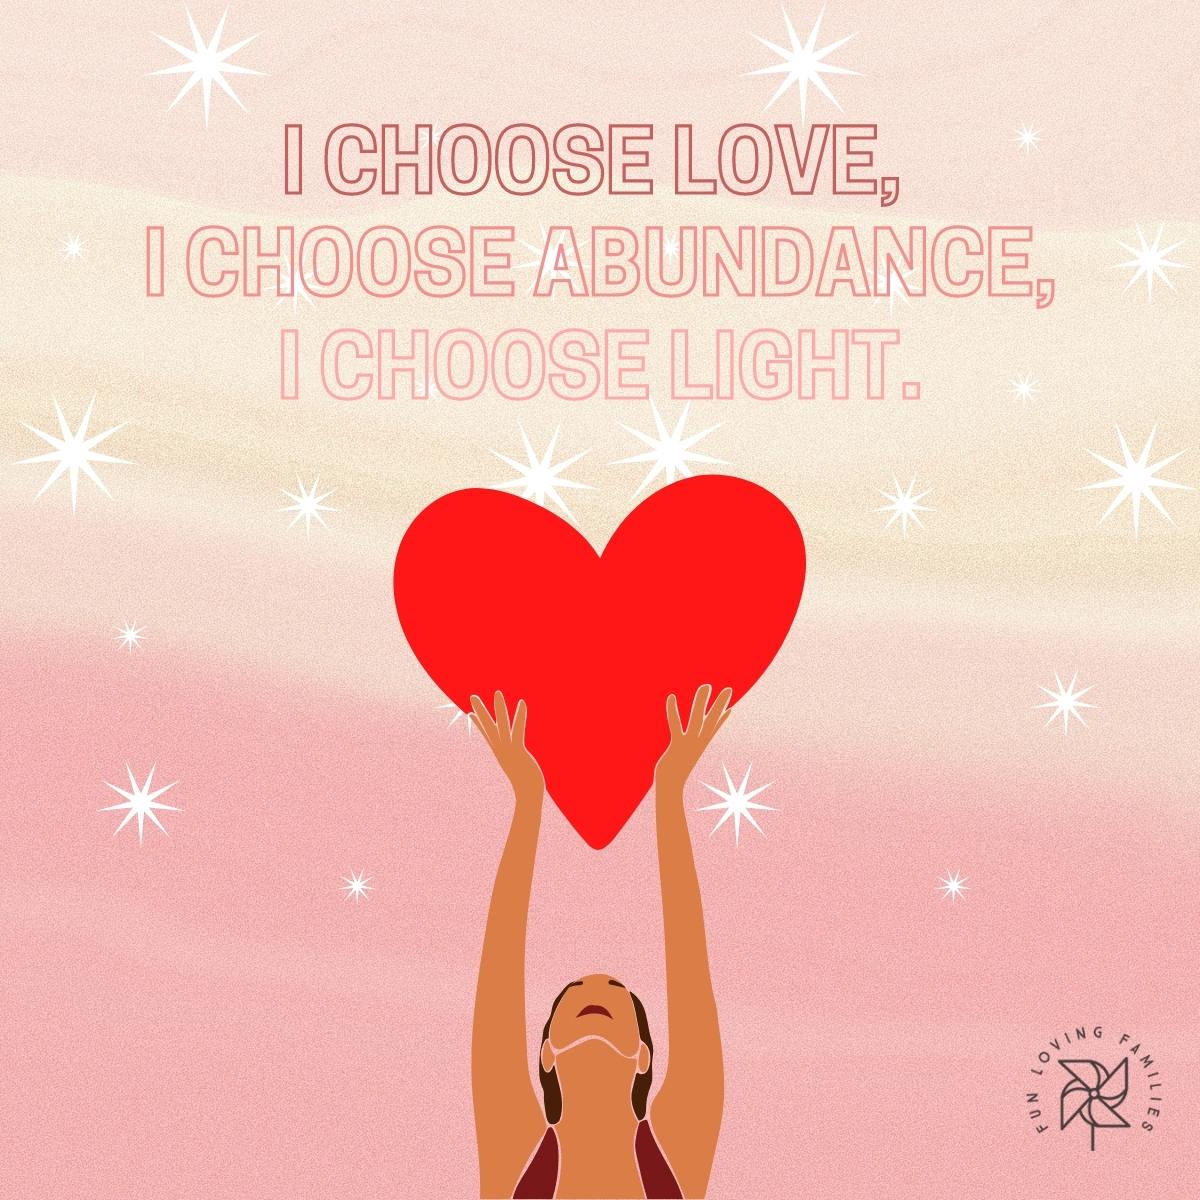 I choose love, I choose abundance, I choose light affirmation image.